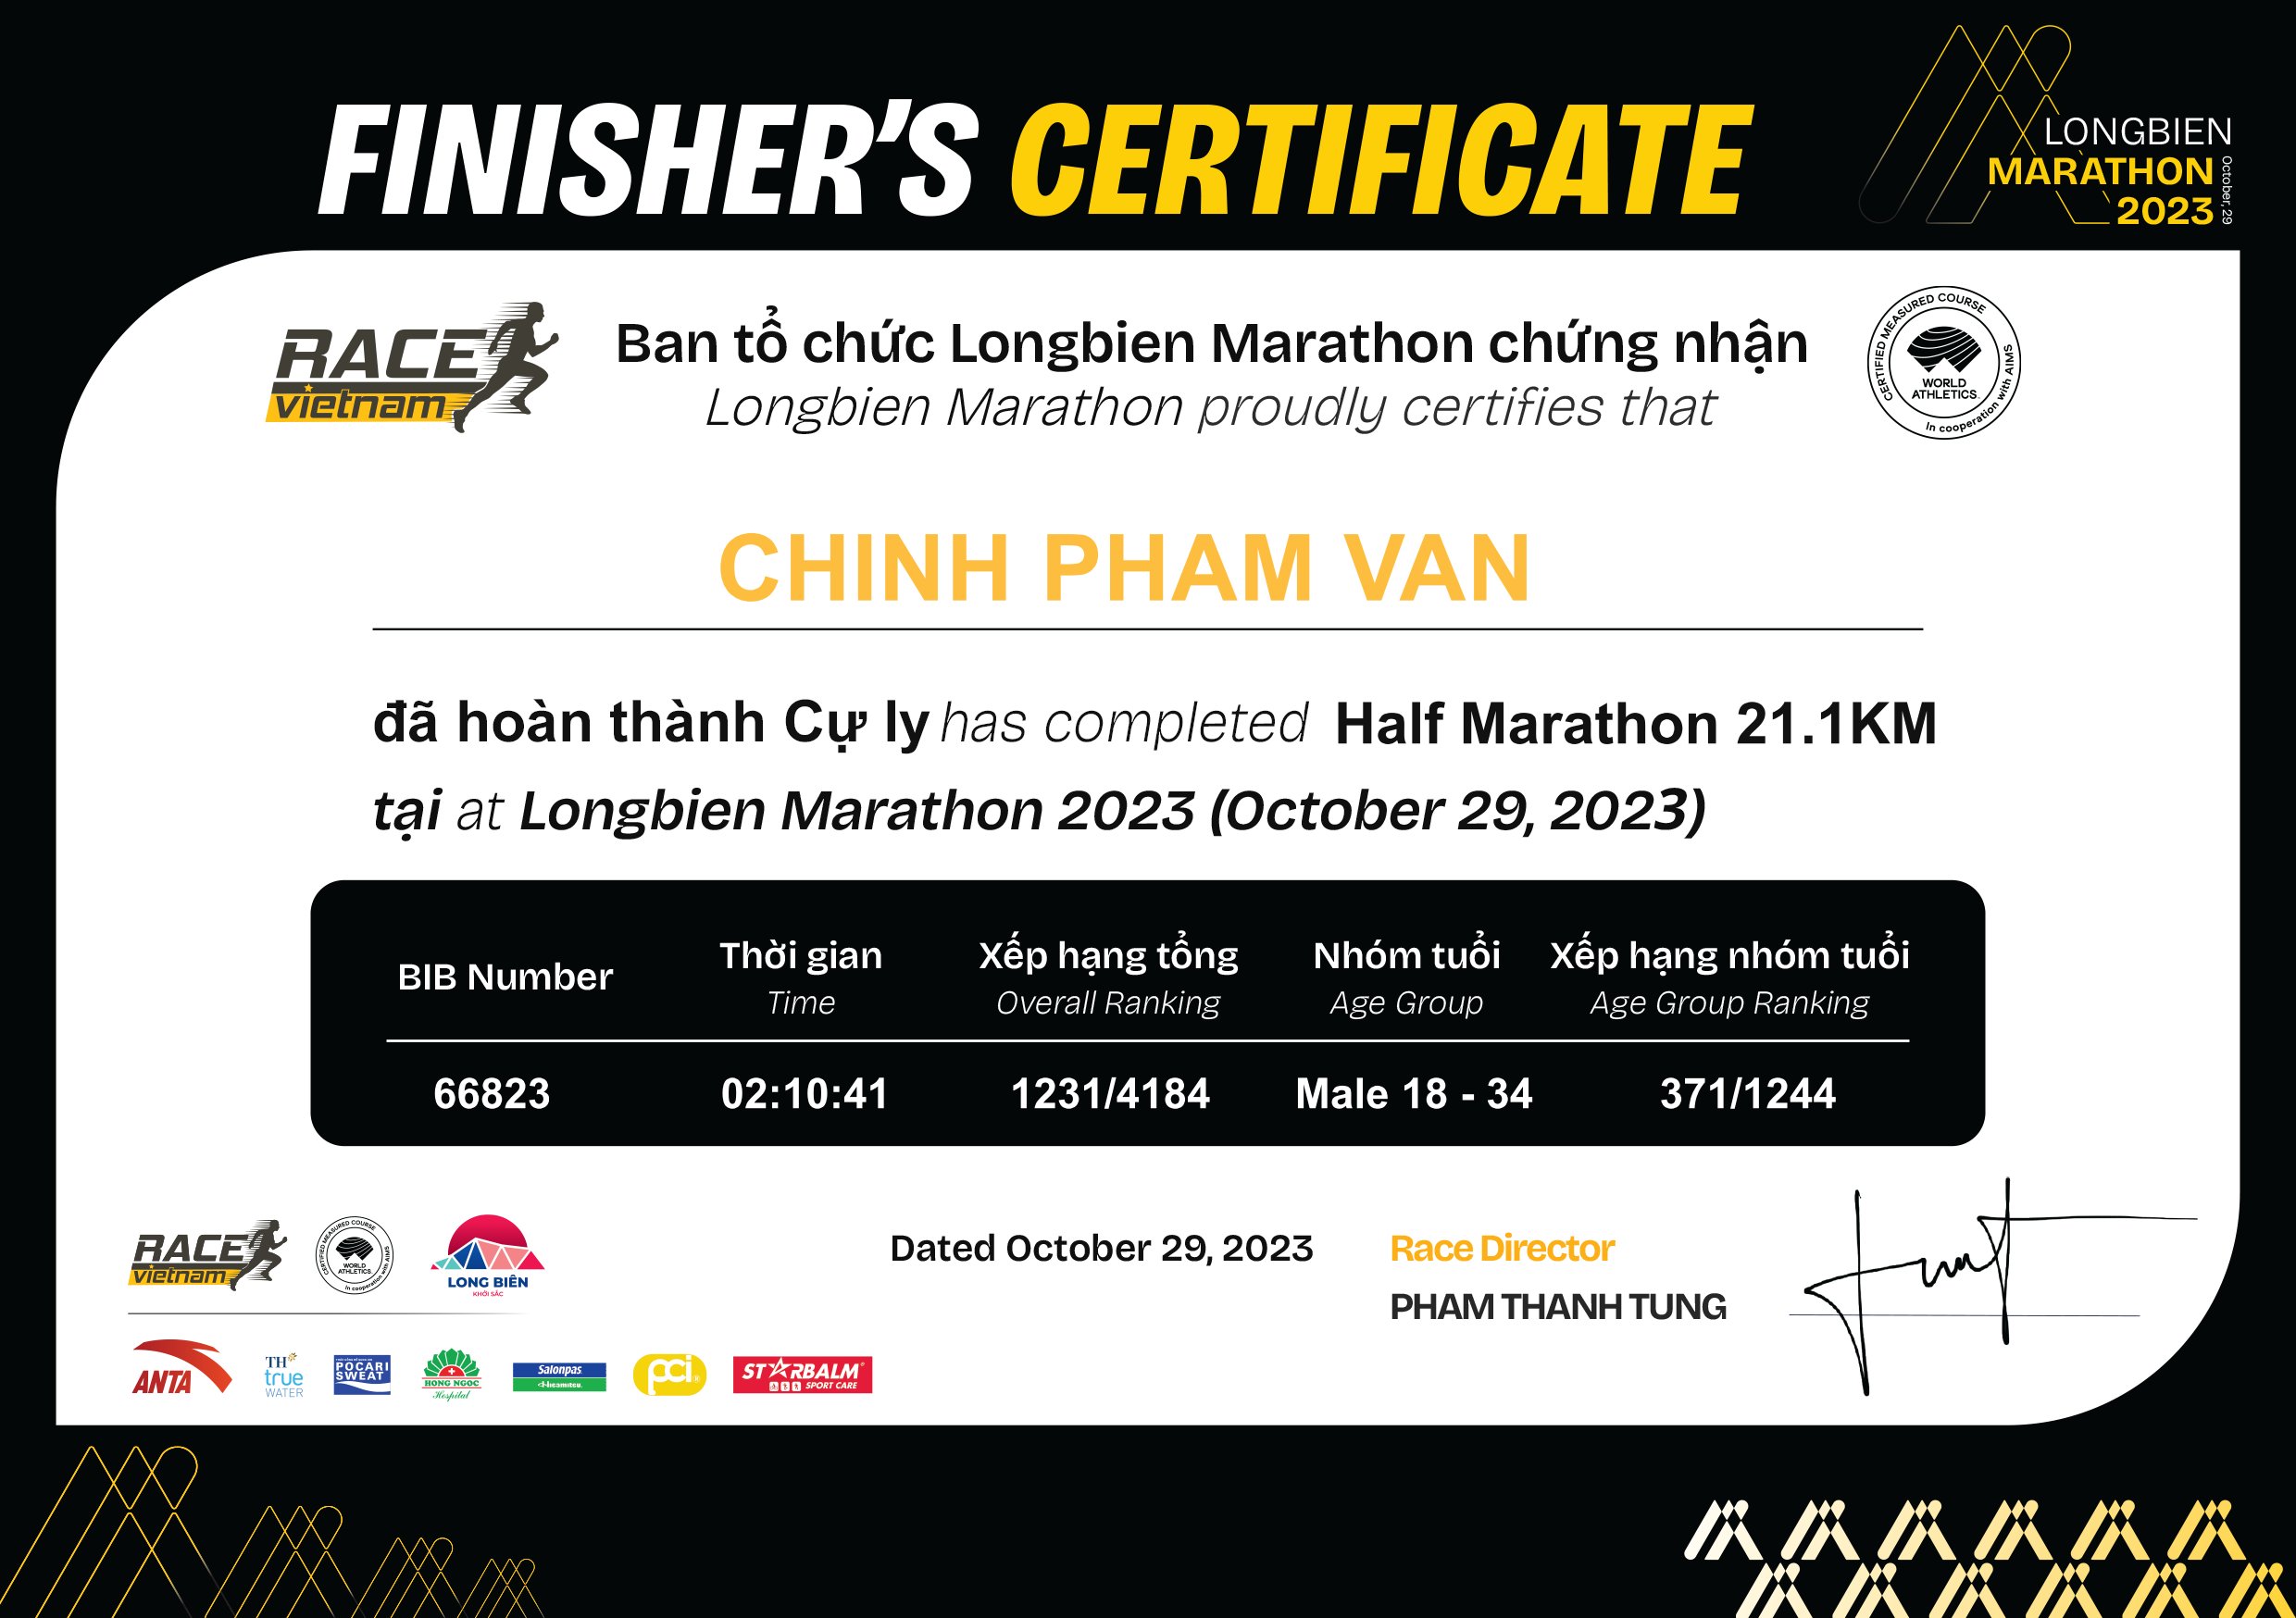 66823 - Chinh Pham Van